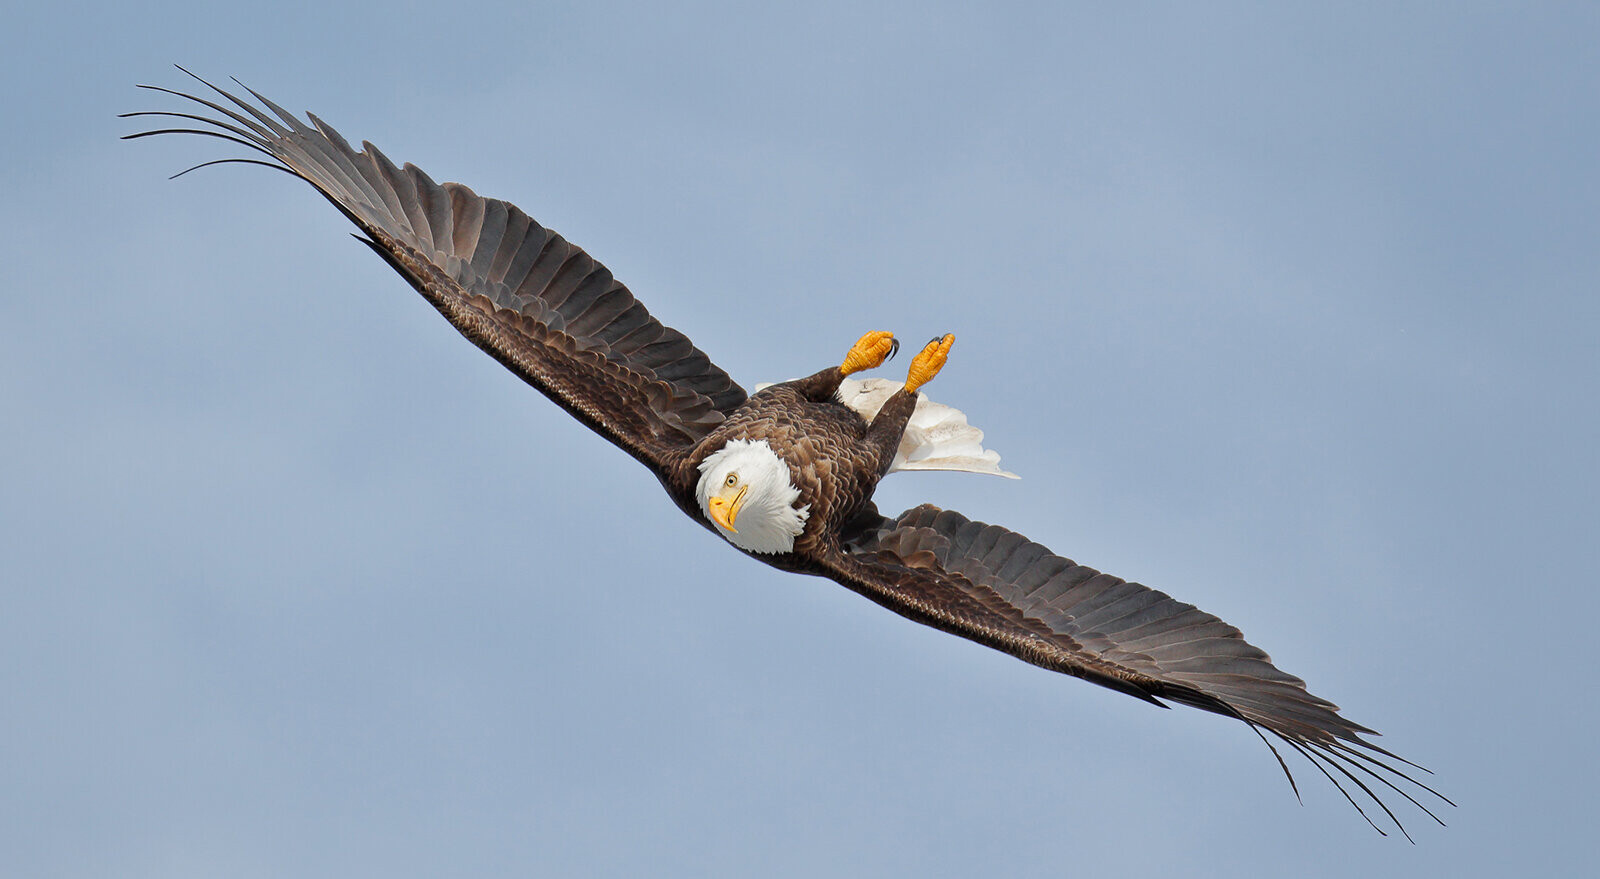 Финалист в категории «Птицы в полёте», 2021. Воздушный акробат. Фотограф Гейл Биссон